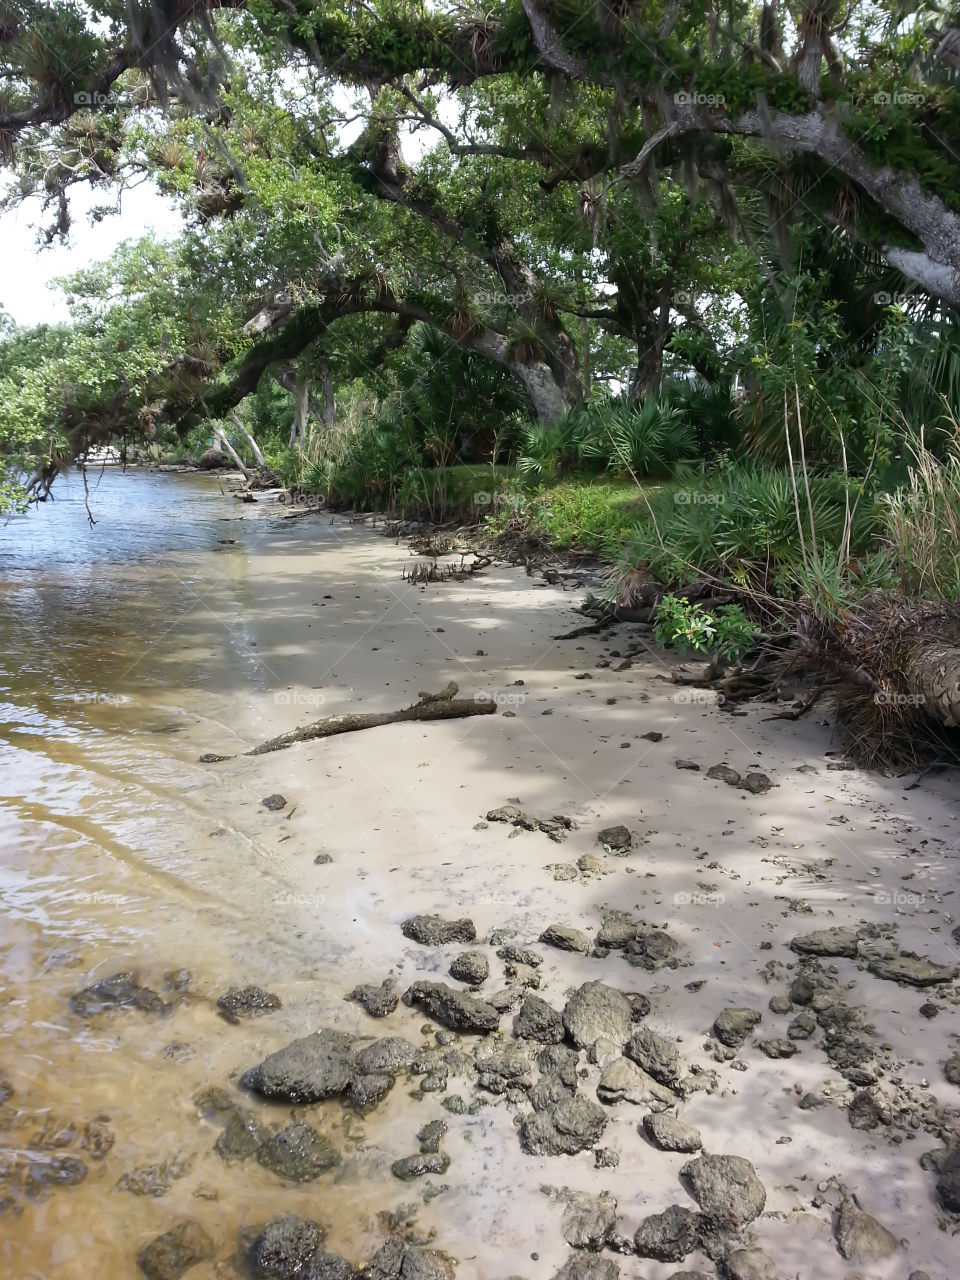 Saint Lucie river bank. Saint Lucie river in Port Saint Lucie, Florida 